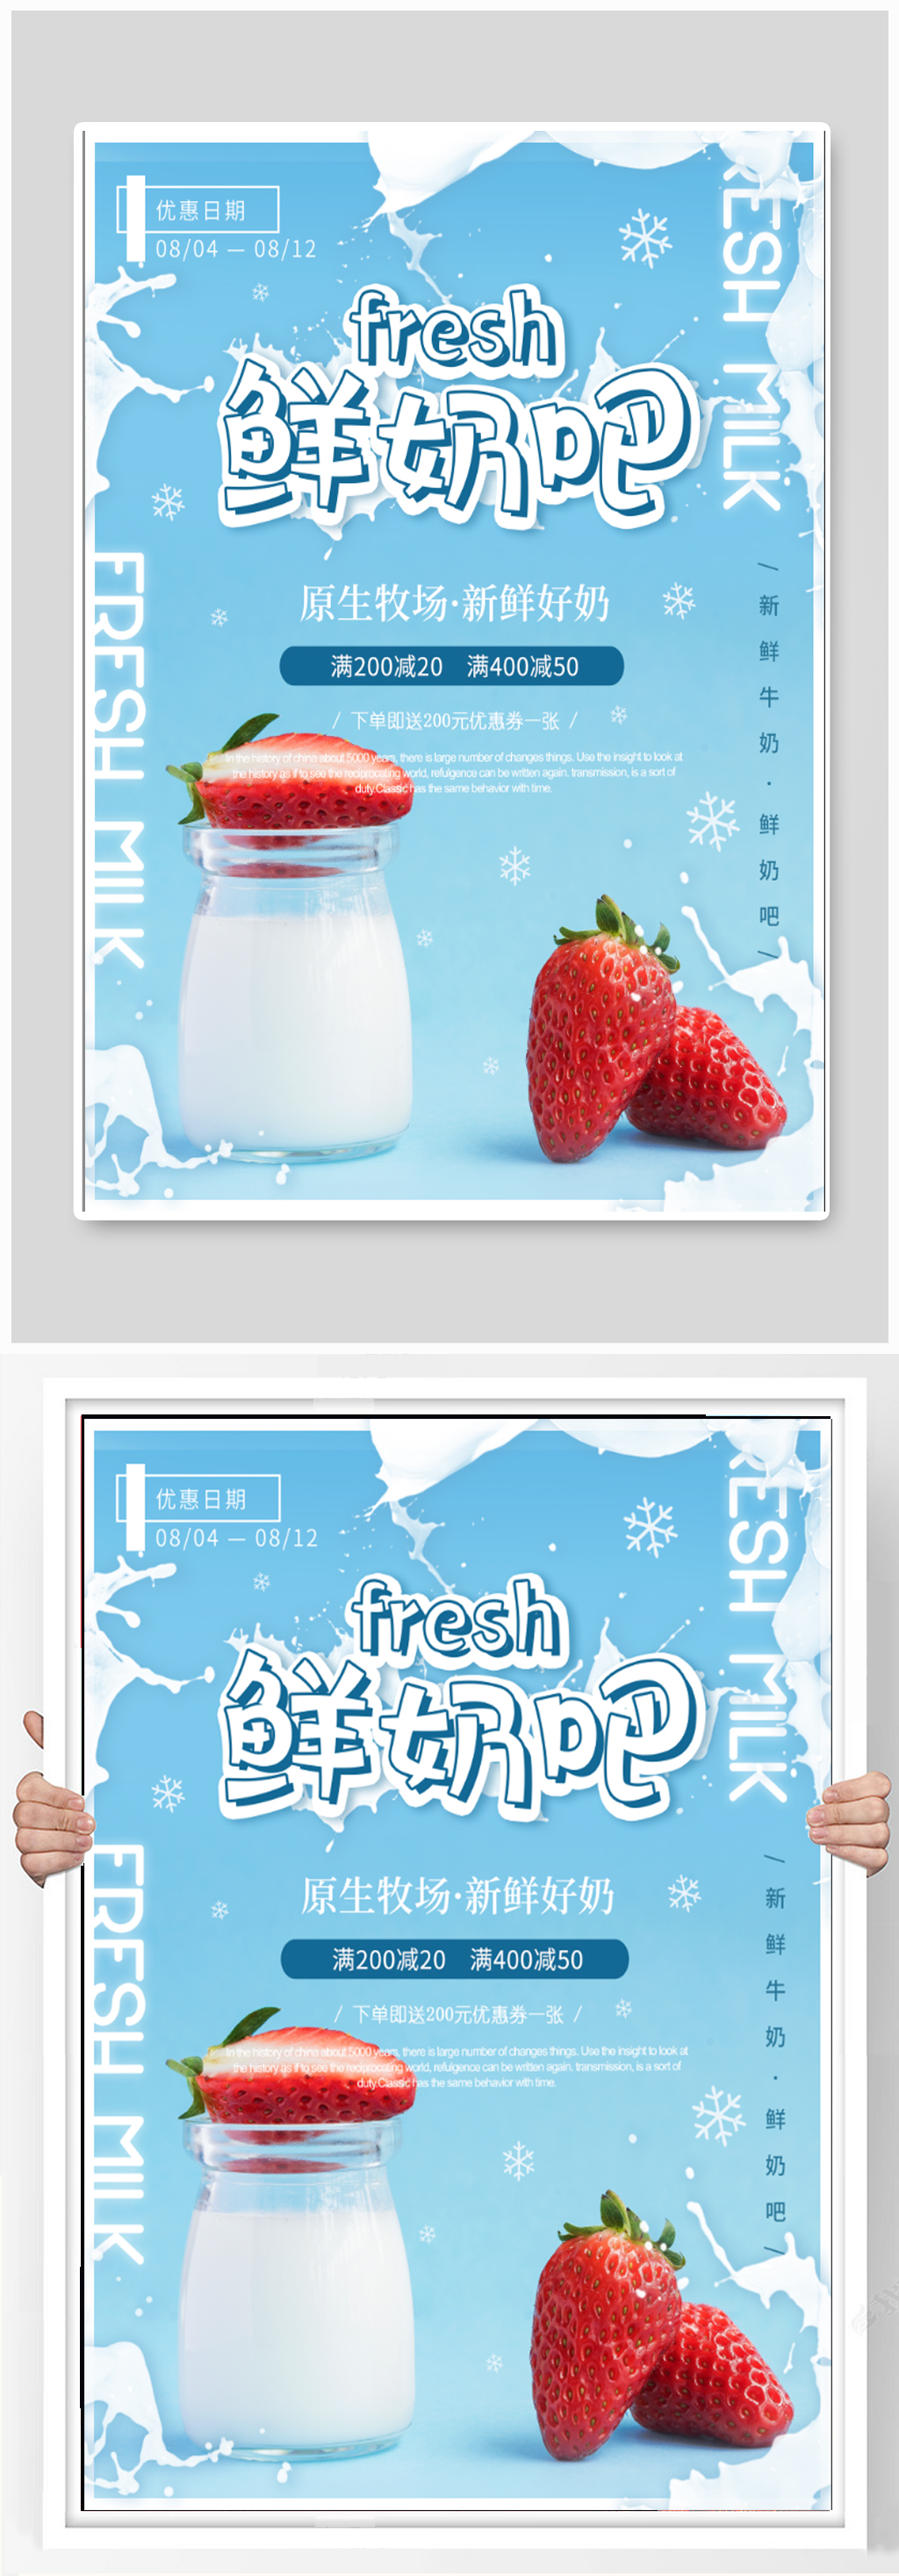 鲜奶吧商铺宣传海报